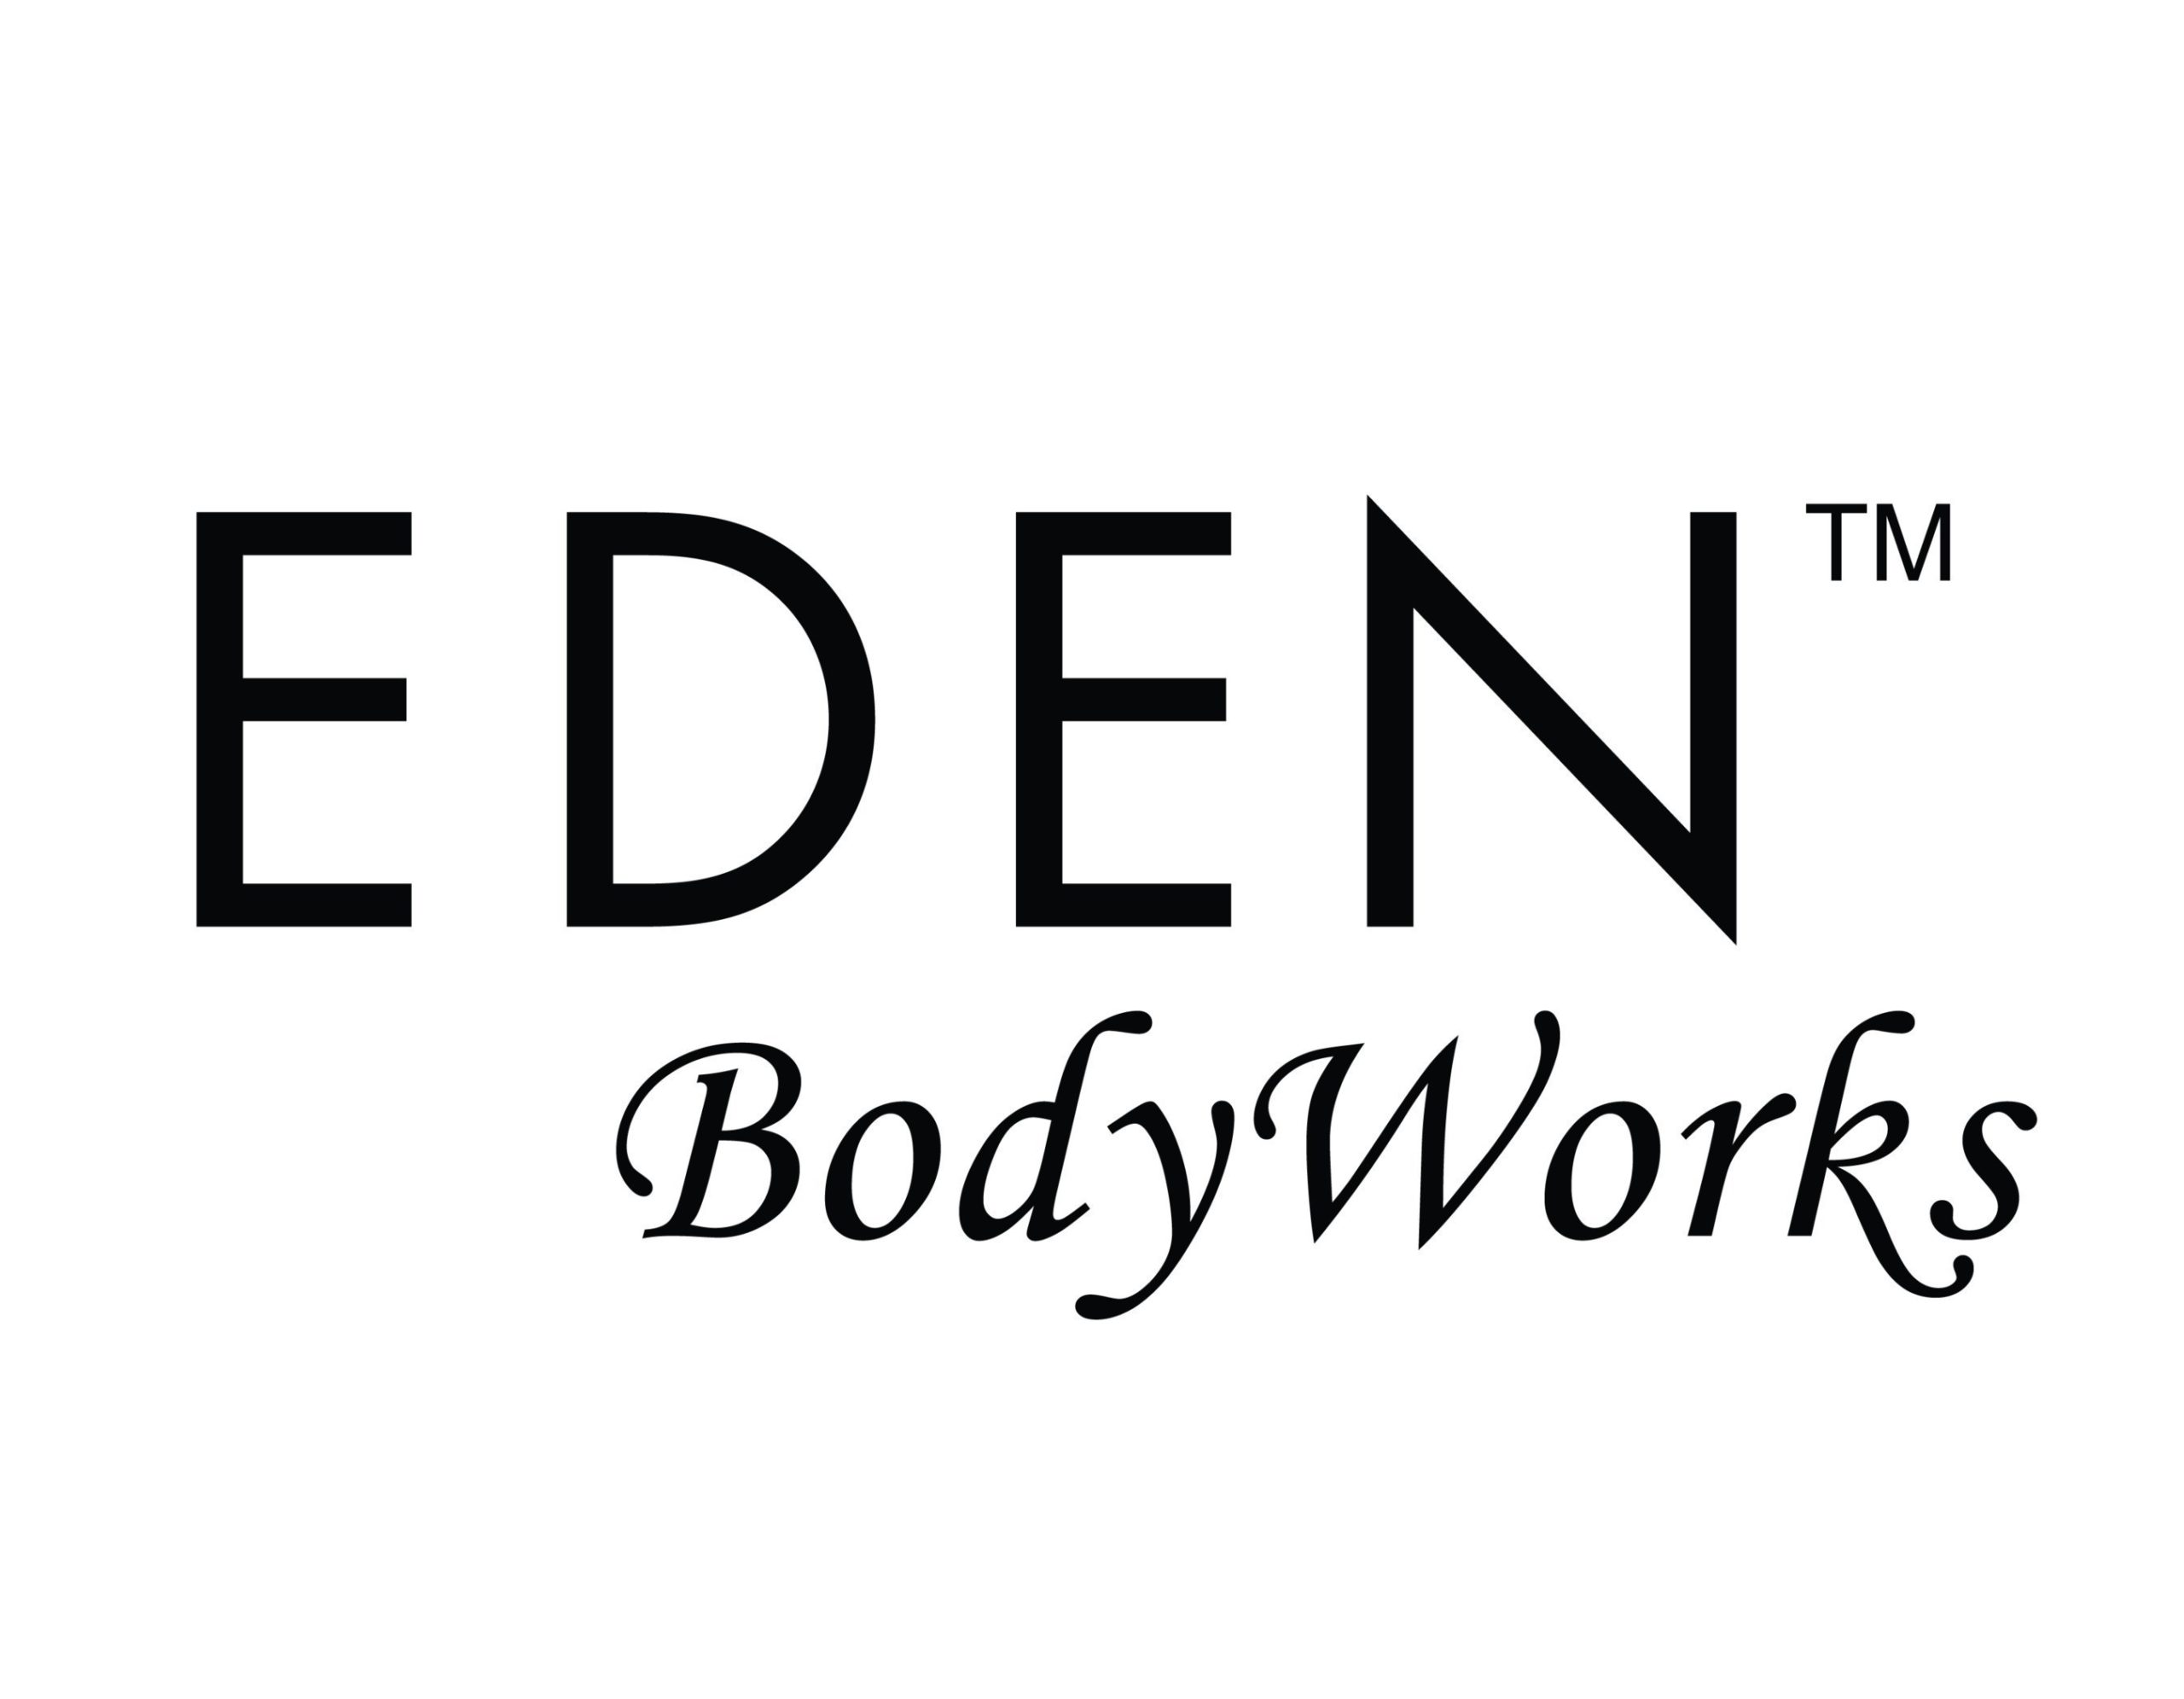 Eden Body Works